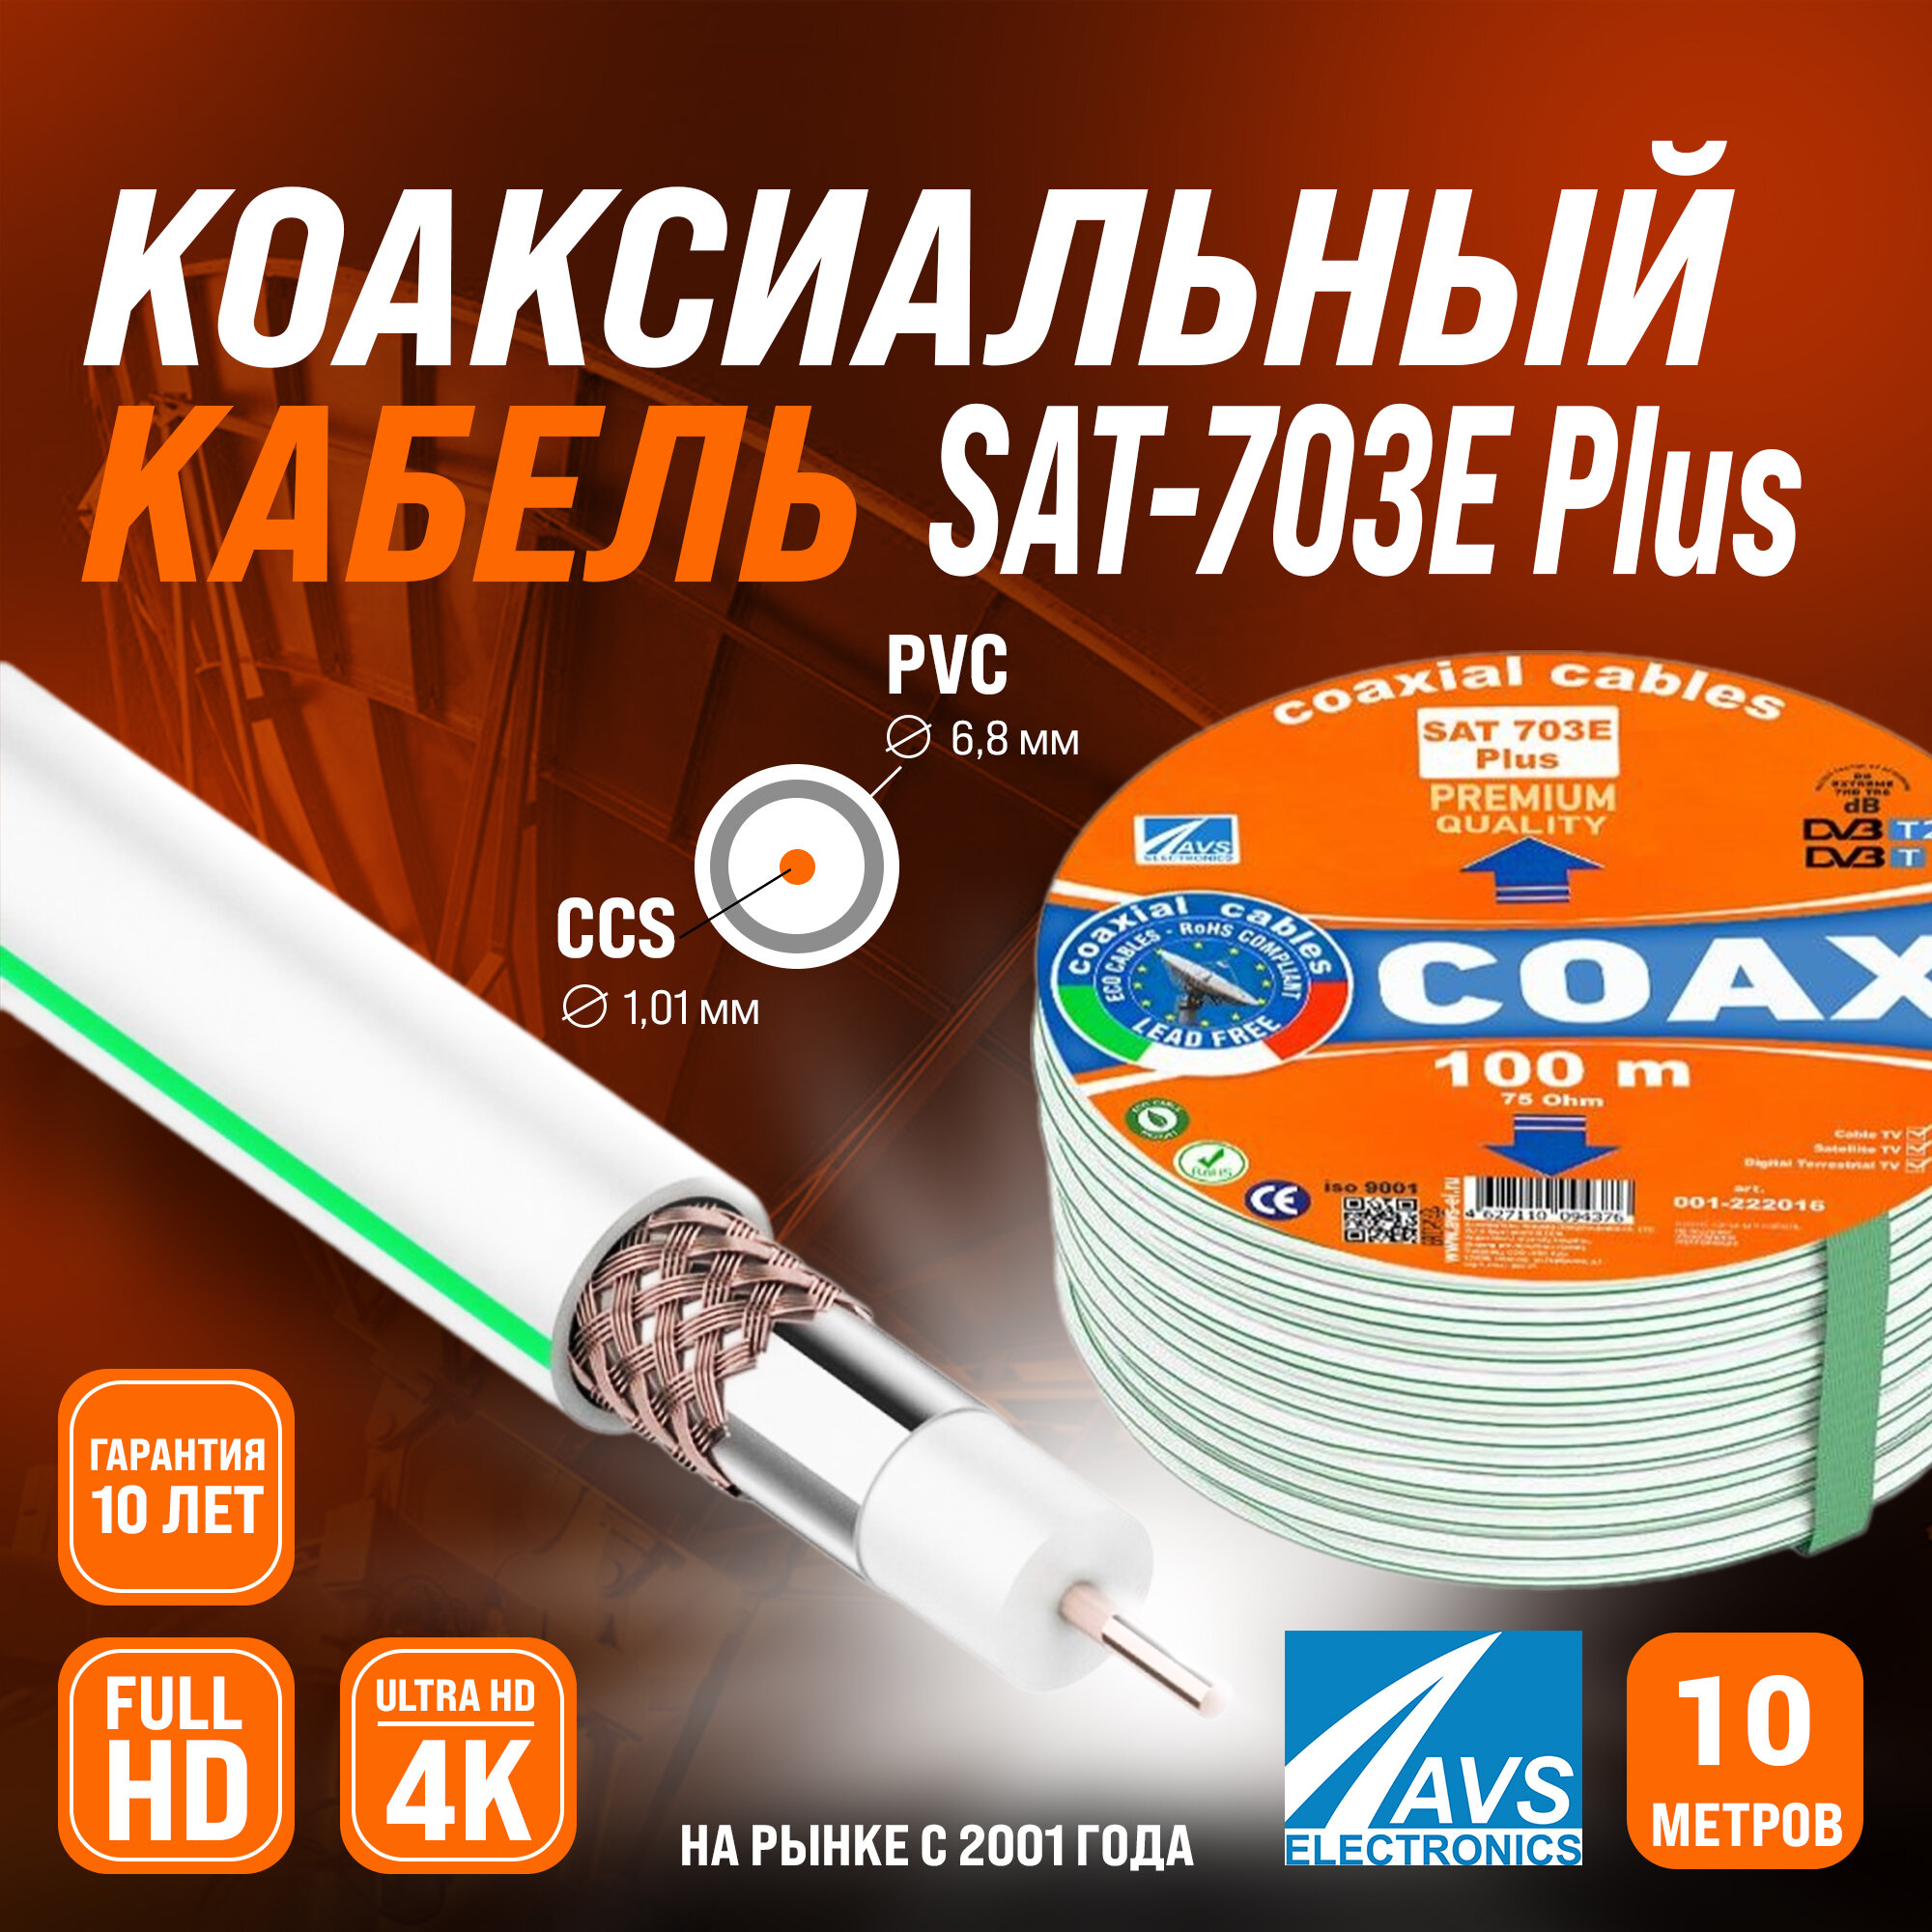 Коаксиальный телевизионный кабель 10 м SAT 703E Plus CCS AVS Electronics антенный провод для спутниковой тарелки цифрового эфирного тв 10 метров 001-222016/10